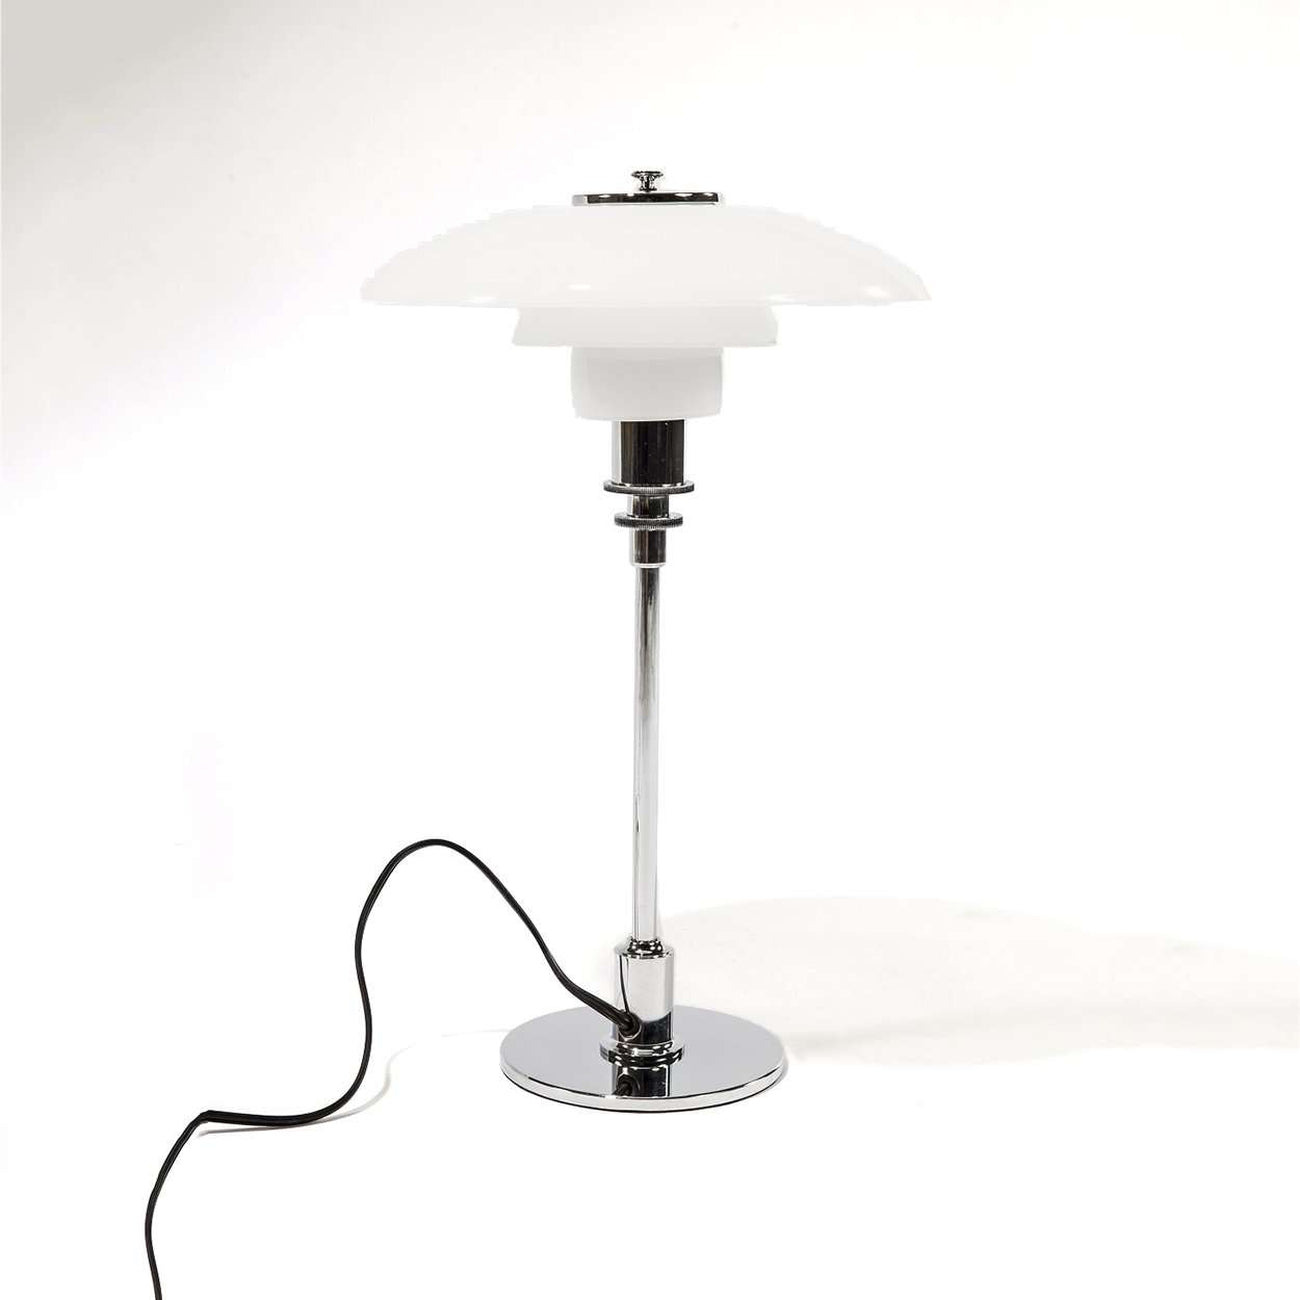 Poul Henningsen 3/2 Table Lamp - Chrome